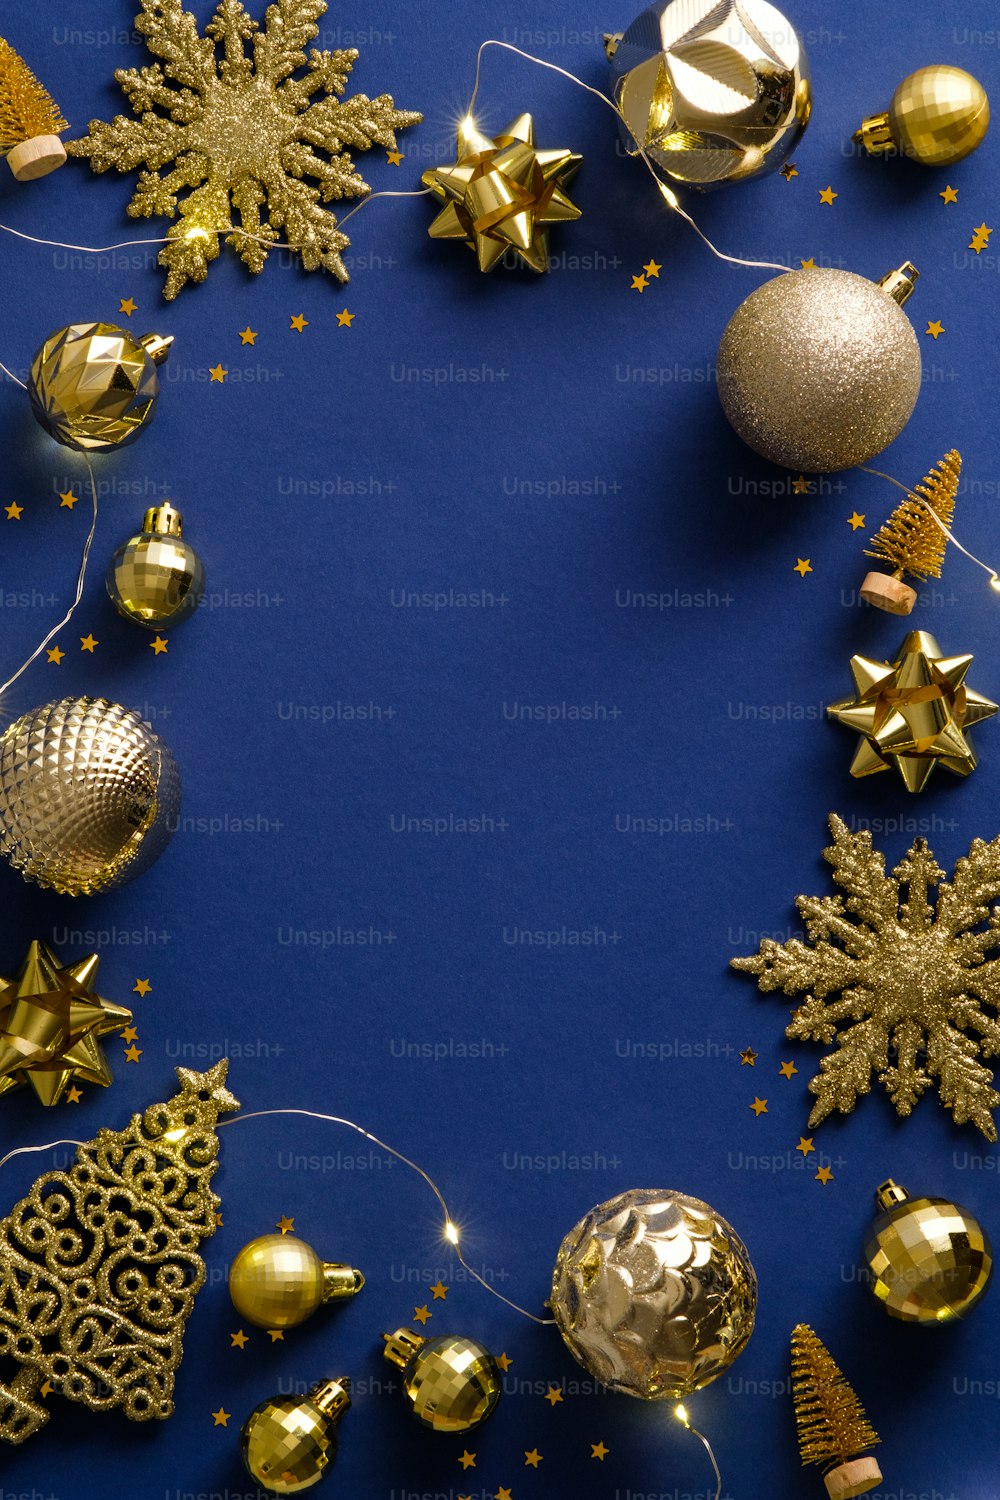 크리스마스 포스터 템플릿입니다. 황금 크리스마스 장식, 화환, 눈송이. 새해 복 많이 받으세요 인사말 카드 모형